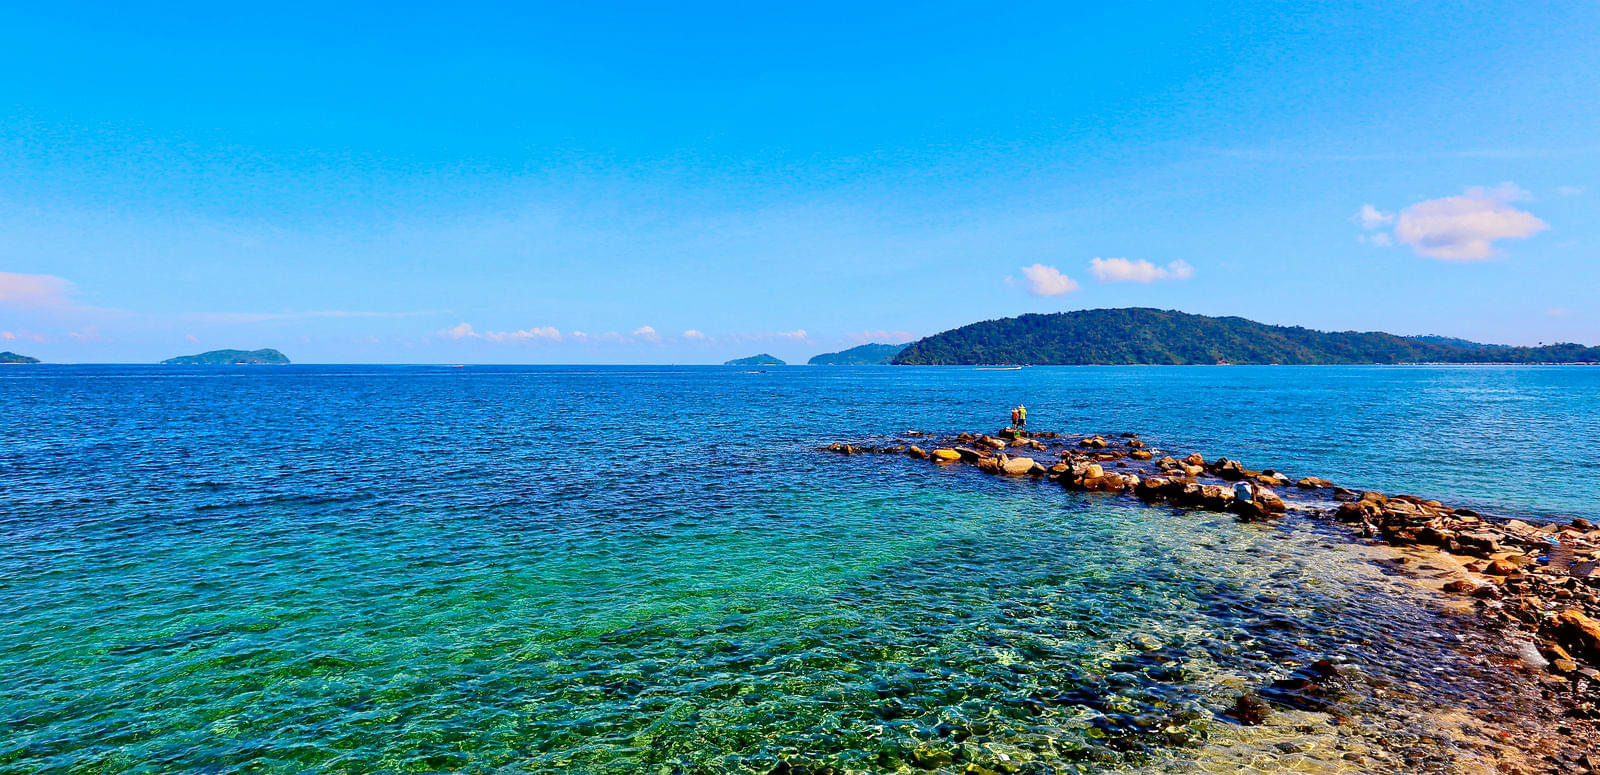 Sepanggar Island